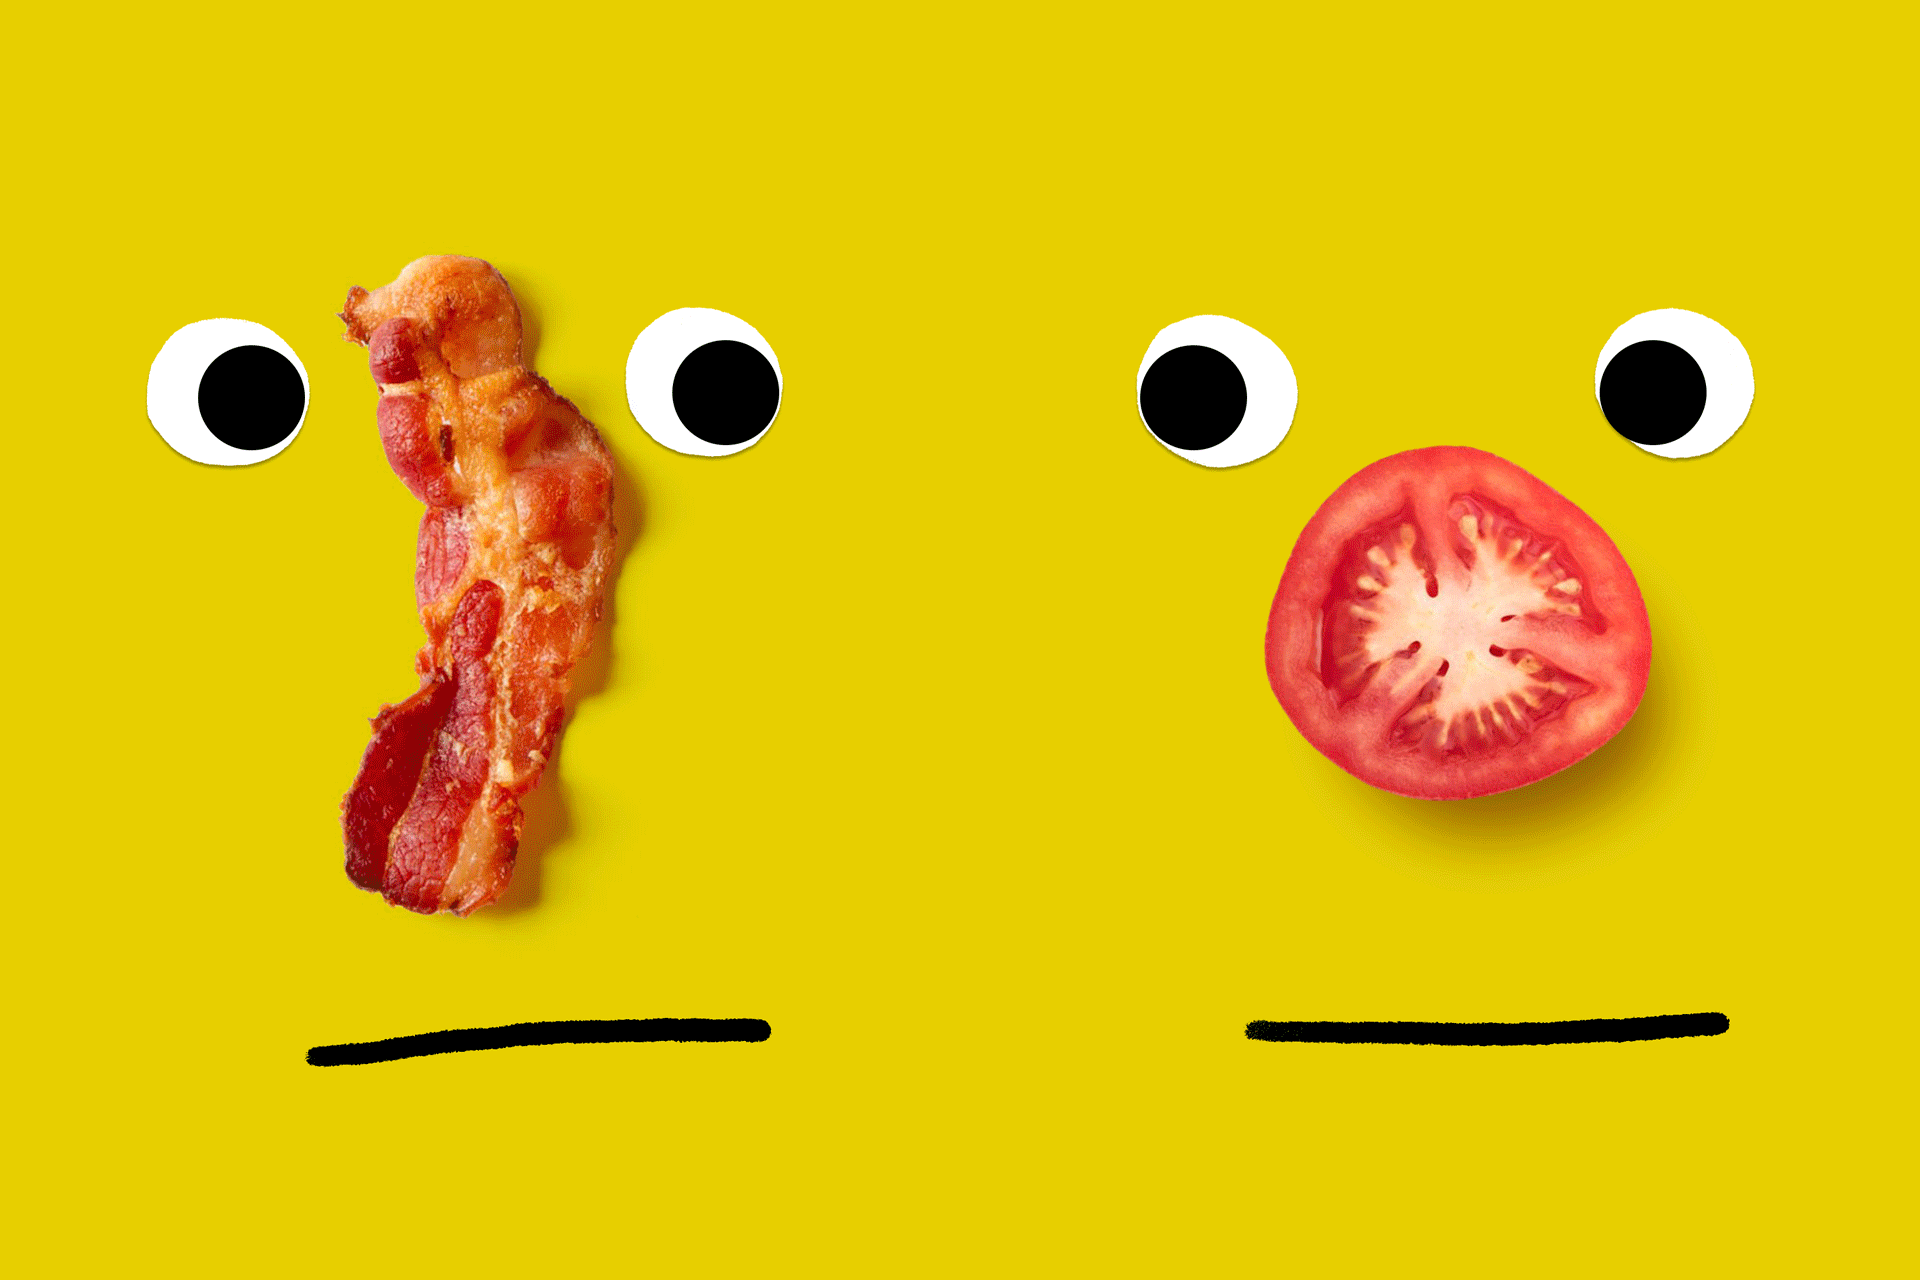 Fotoillustration von zwei komischen Gesichtern mit animierten Nasen, die aus Fleisch und vegetarischen Lebensmitteln geformt sind